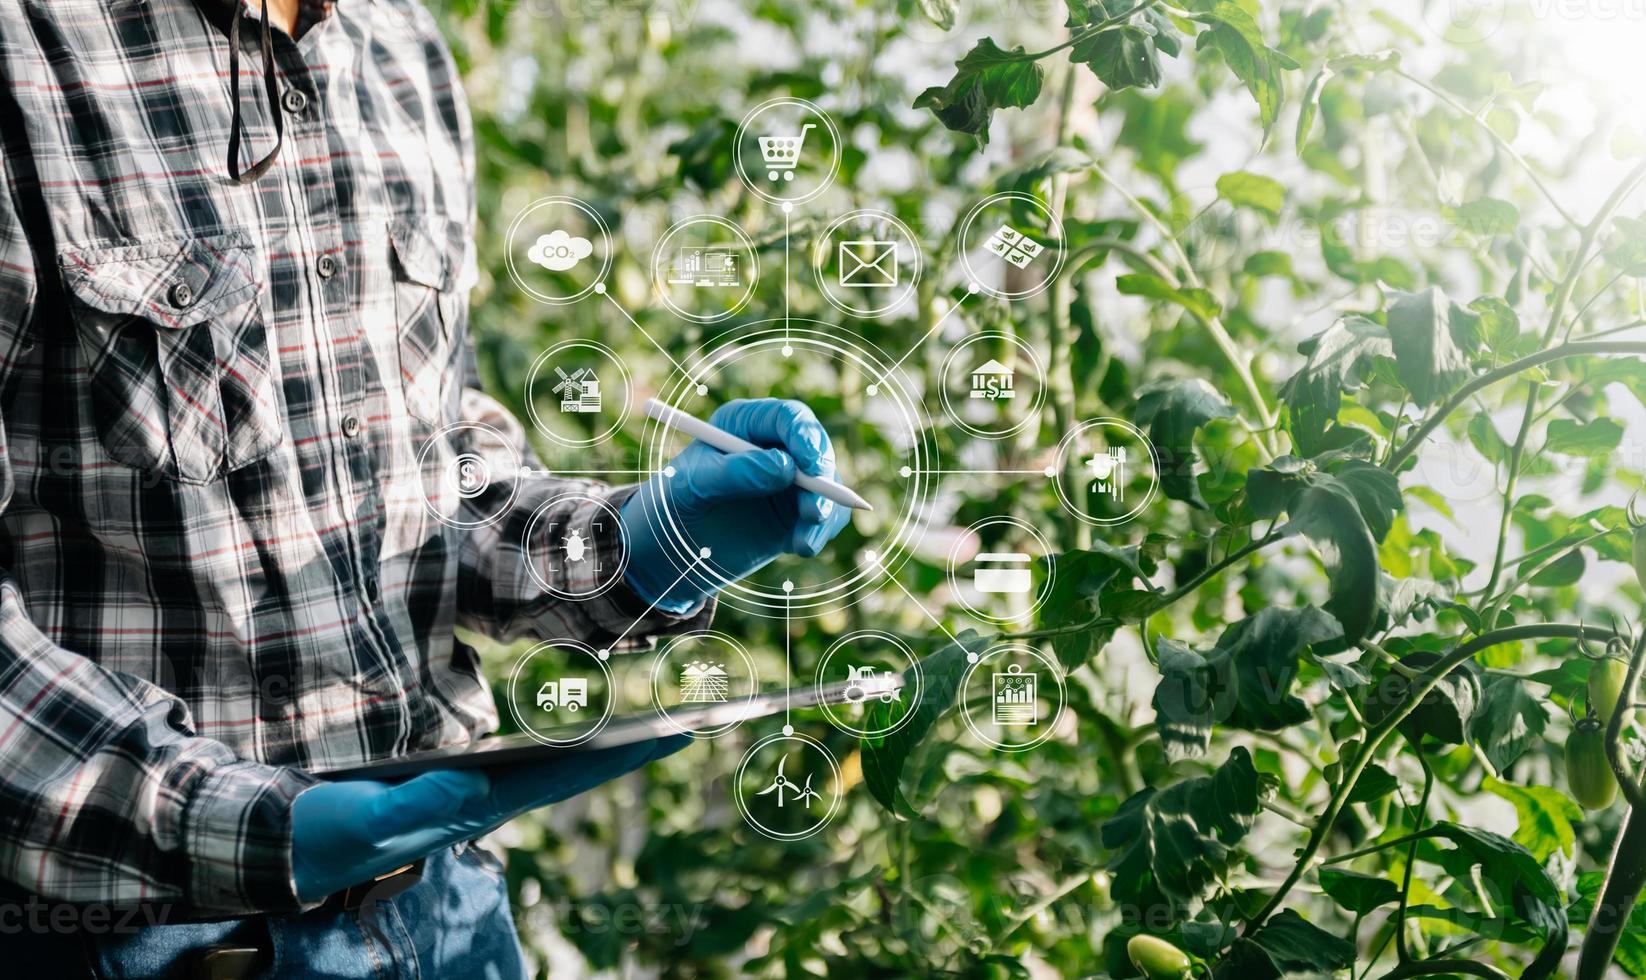 a agricultura usa tablets de controle de produção para monitorar vegetais e tomates de qualidade em estufa. agricultor inteligente usando uma tecnologia para estudar foto